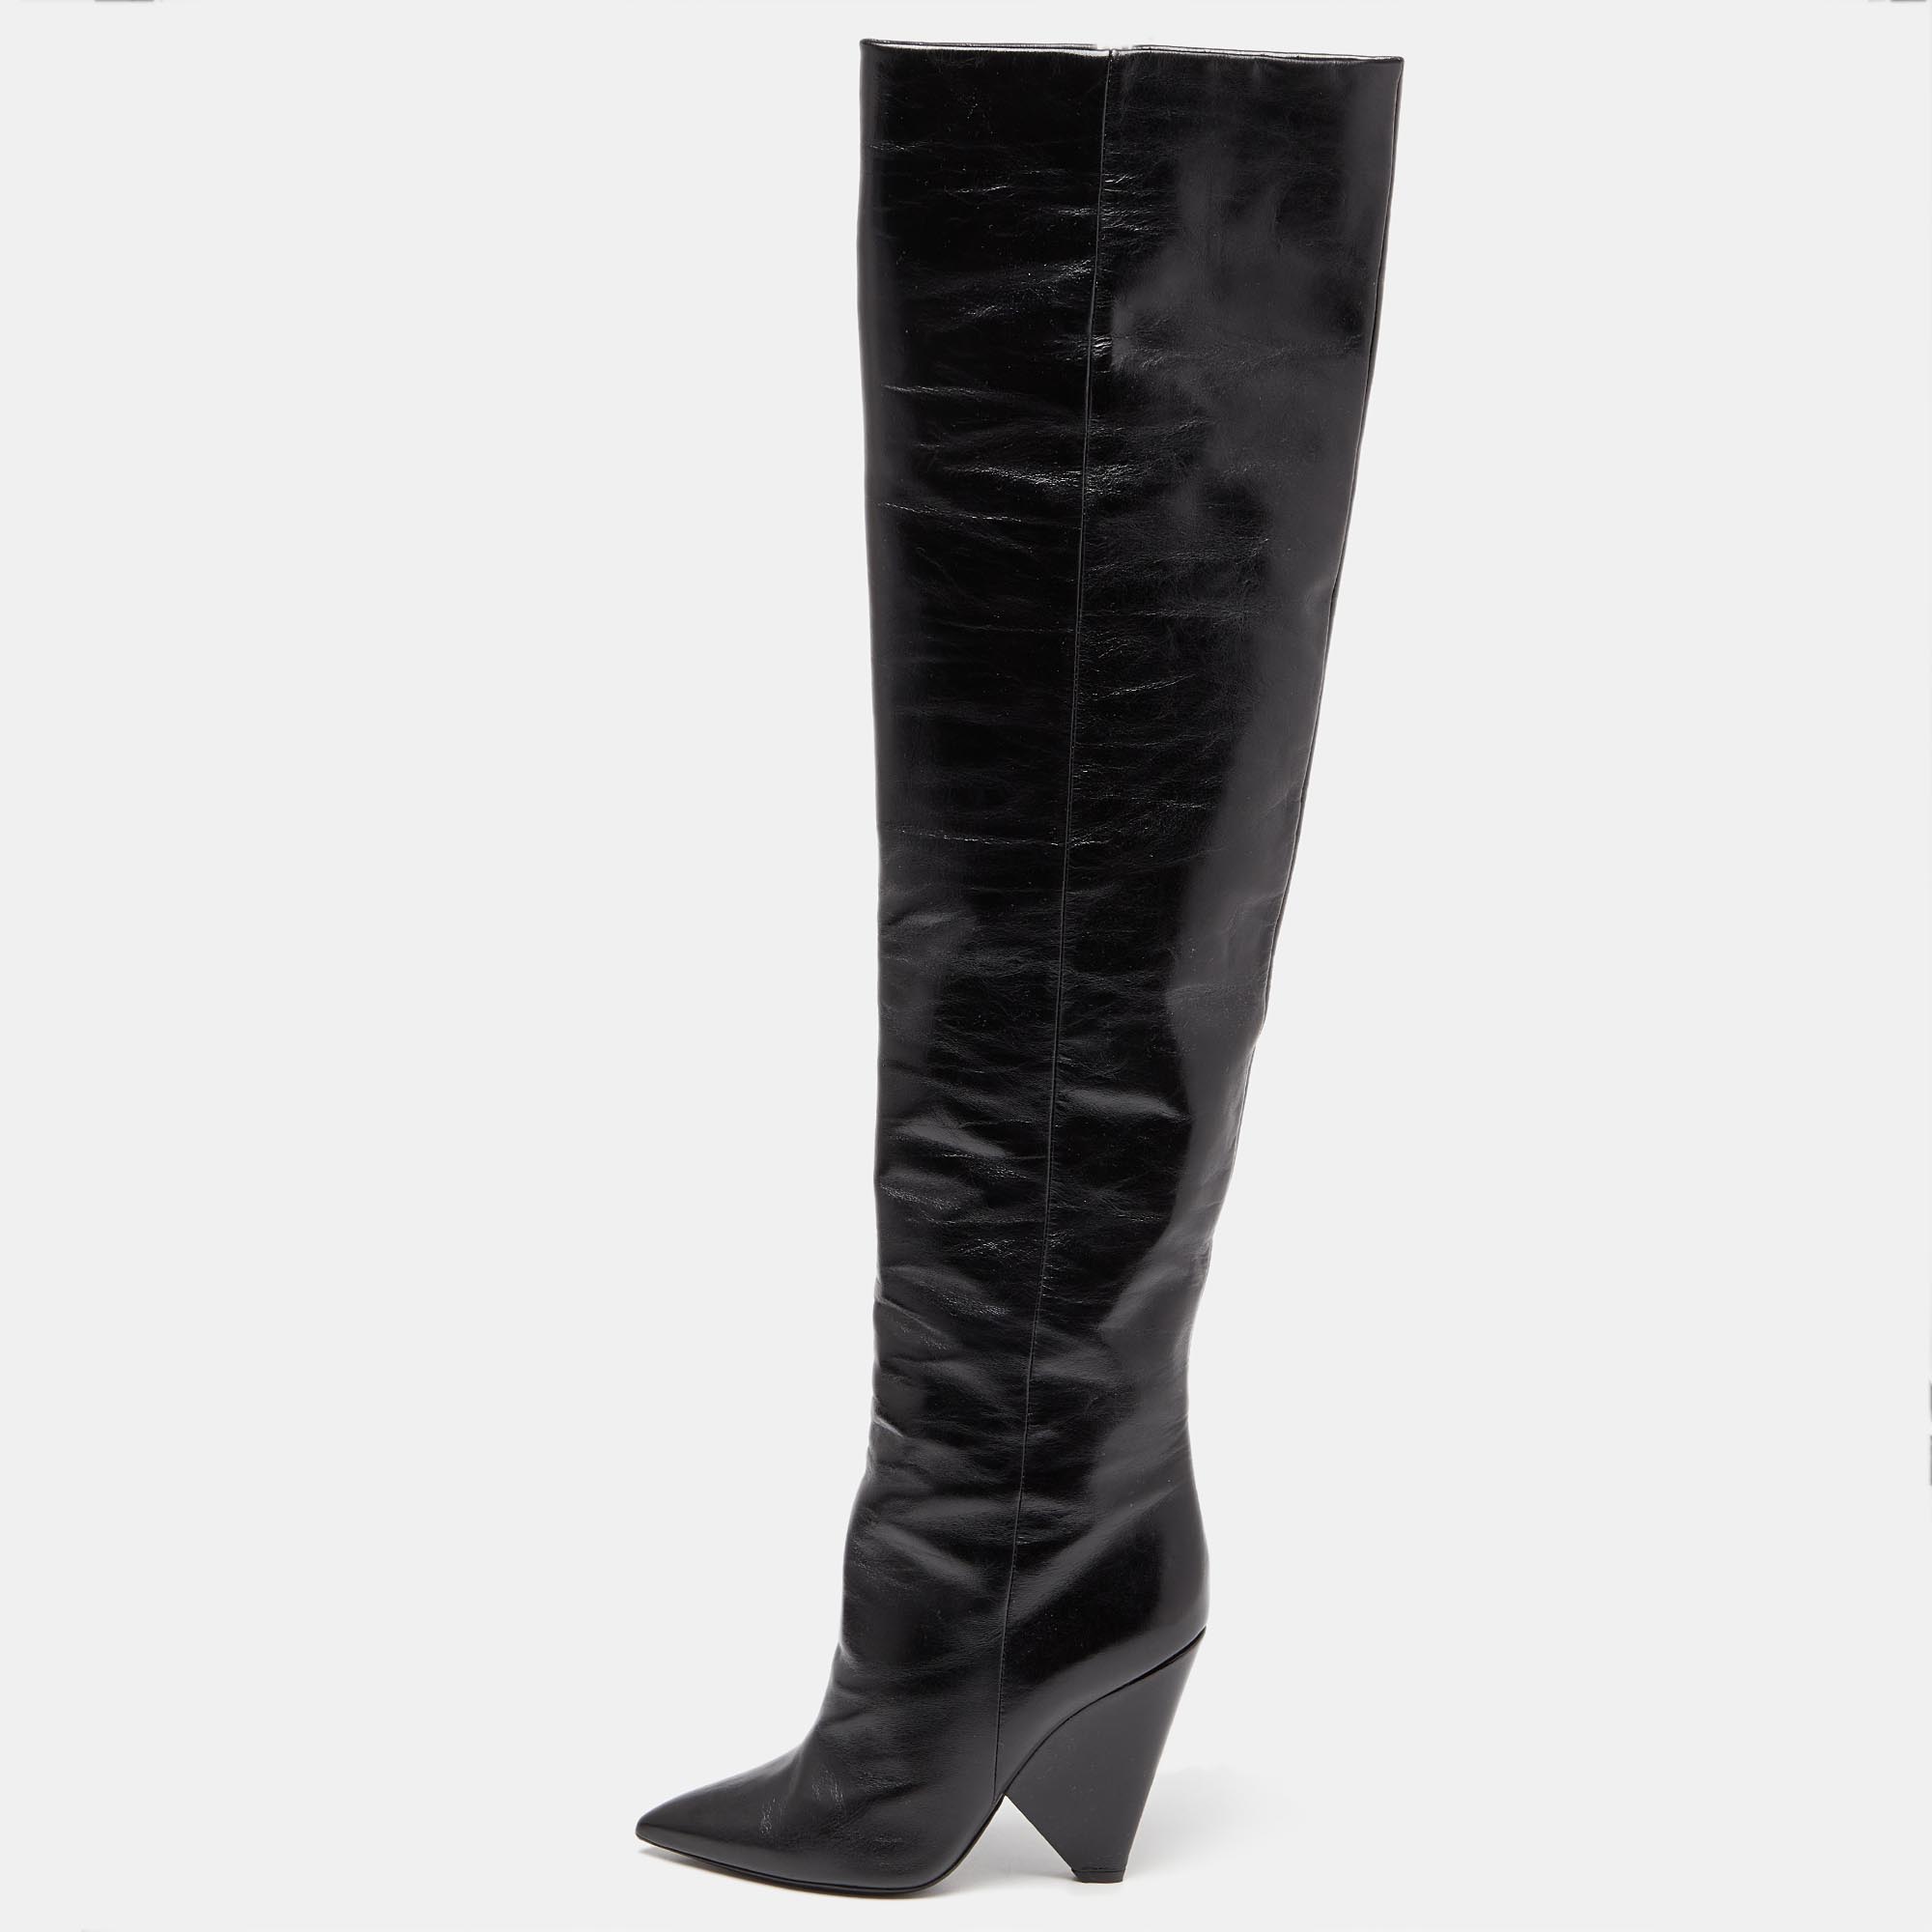 Saint laurent paris saint laurent black patent leather niki over the knee boots size 38